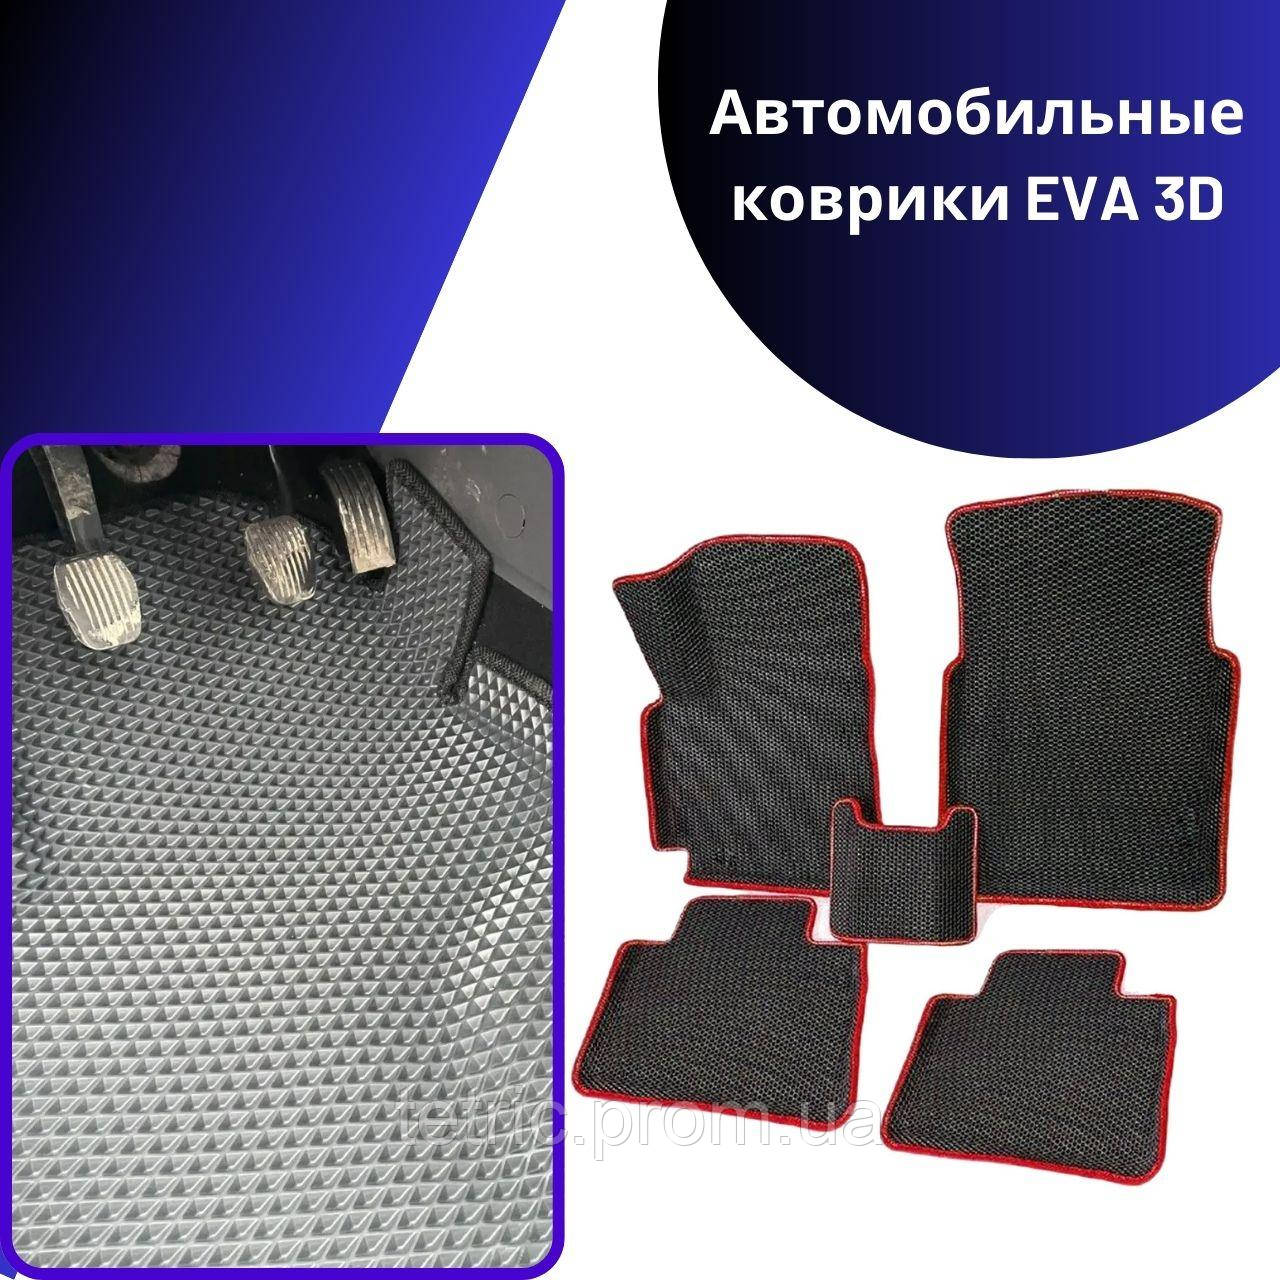 Автомобільні килимки EVA 3D на Audi 100 C3 Ауди Килими в салон ева Ево Килимок в салон